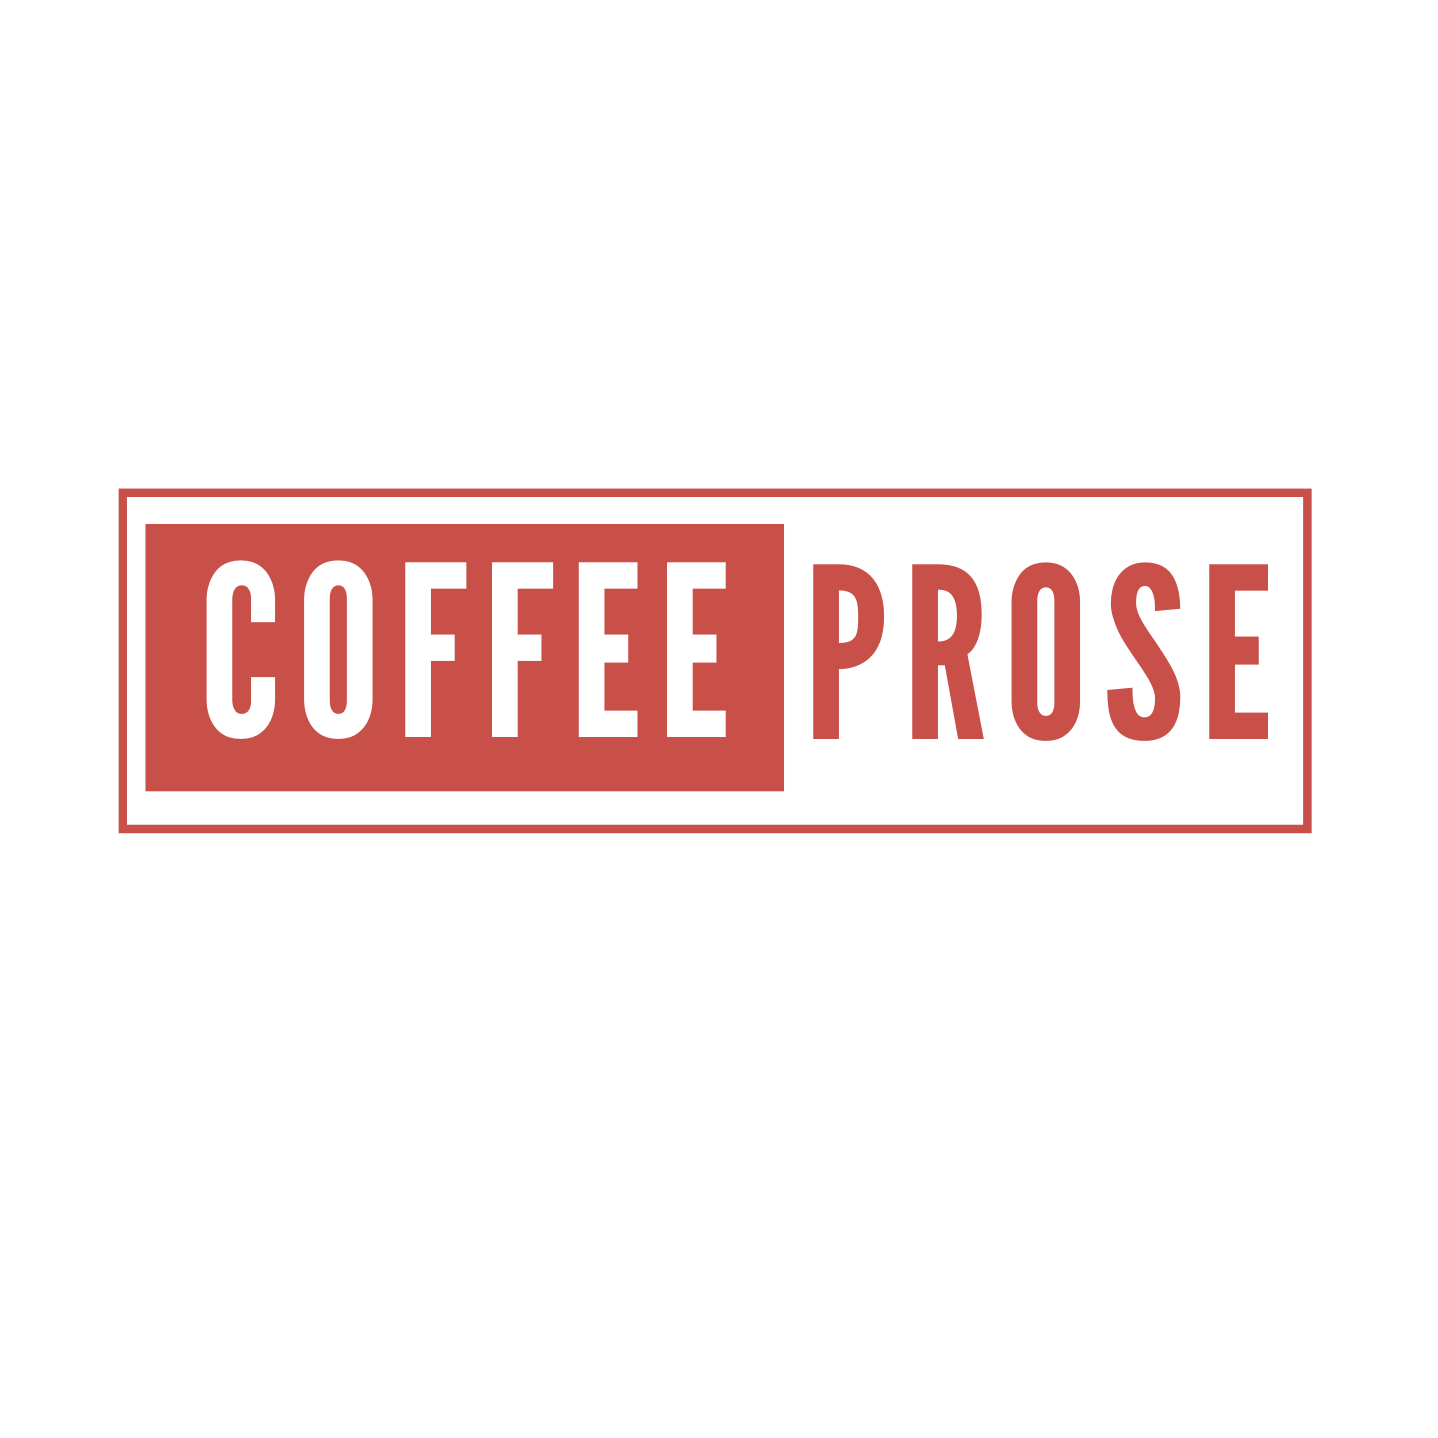 Coffee Prose